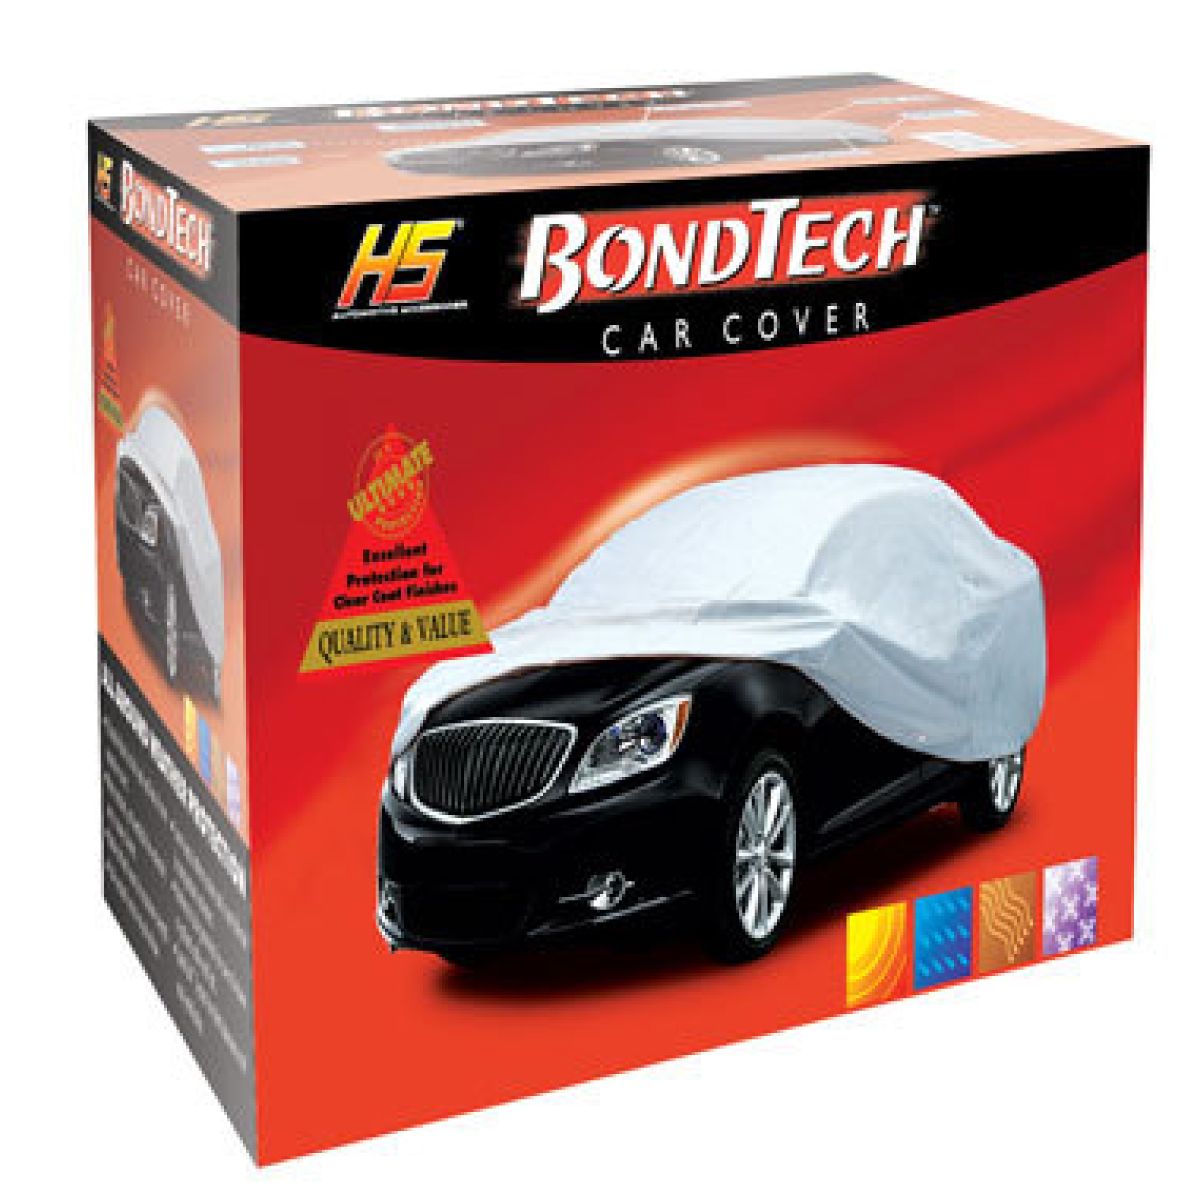 Car cover Bondtech